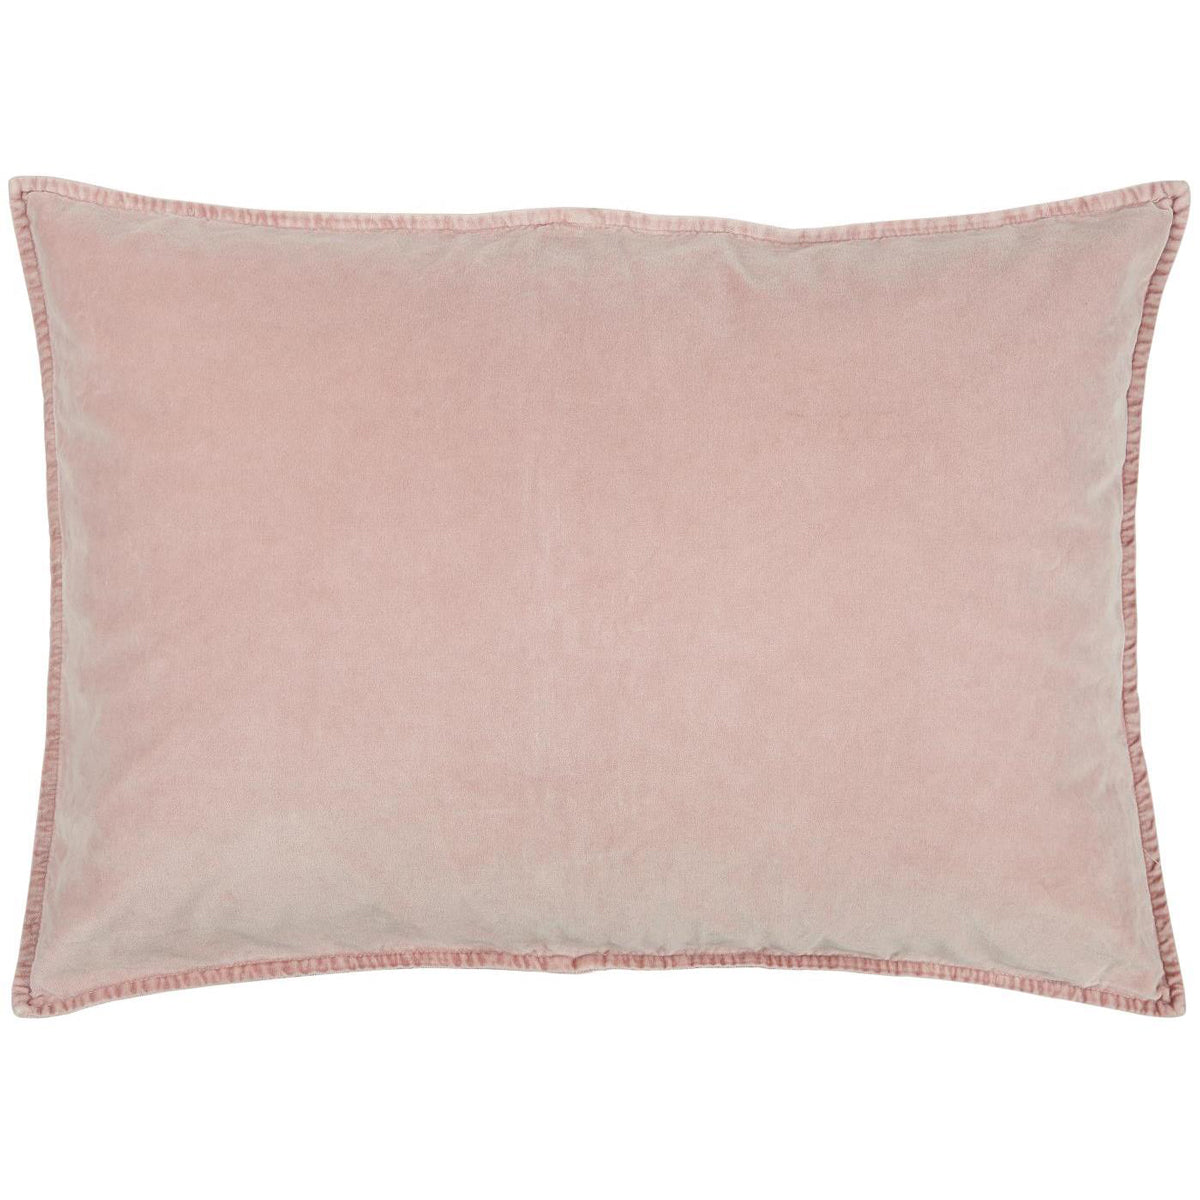 Cushion Cover Velvet - Rose Shadow 50 x 70cm